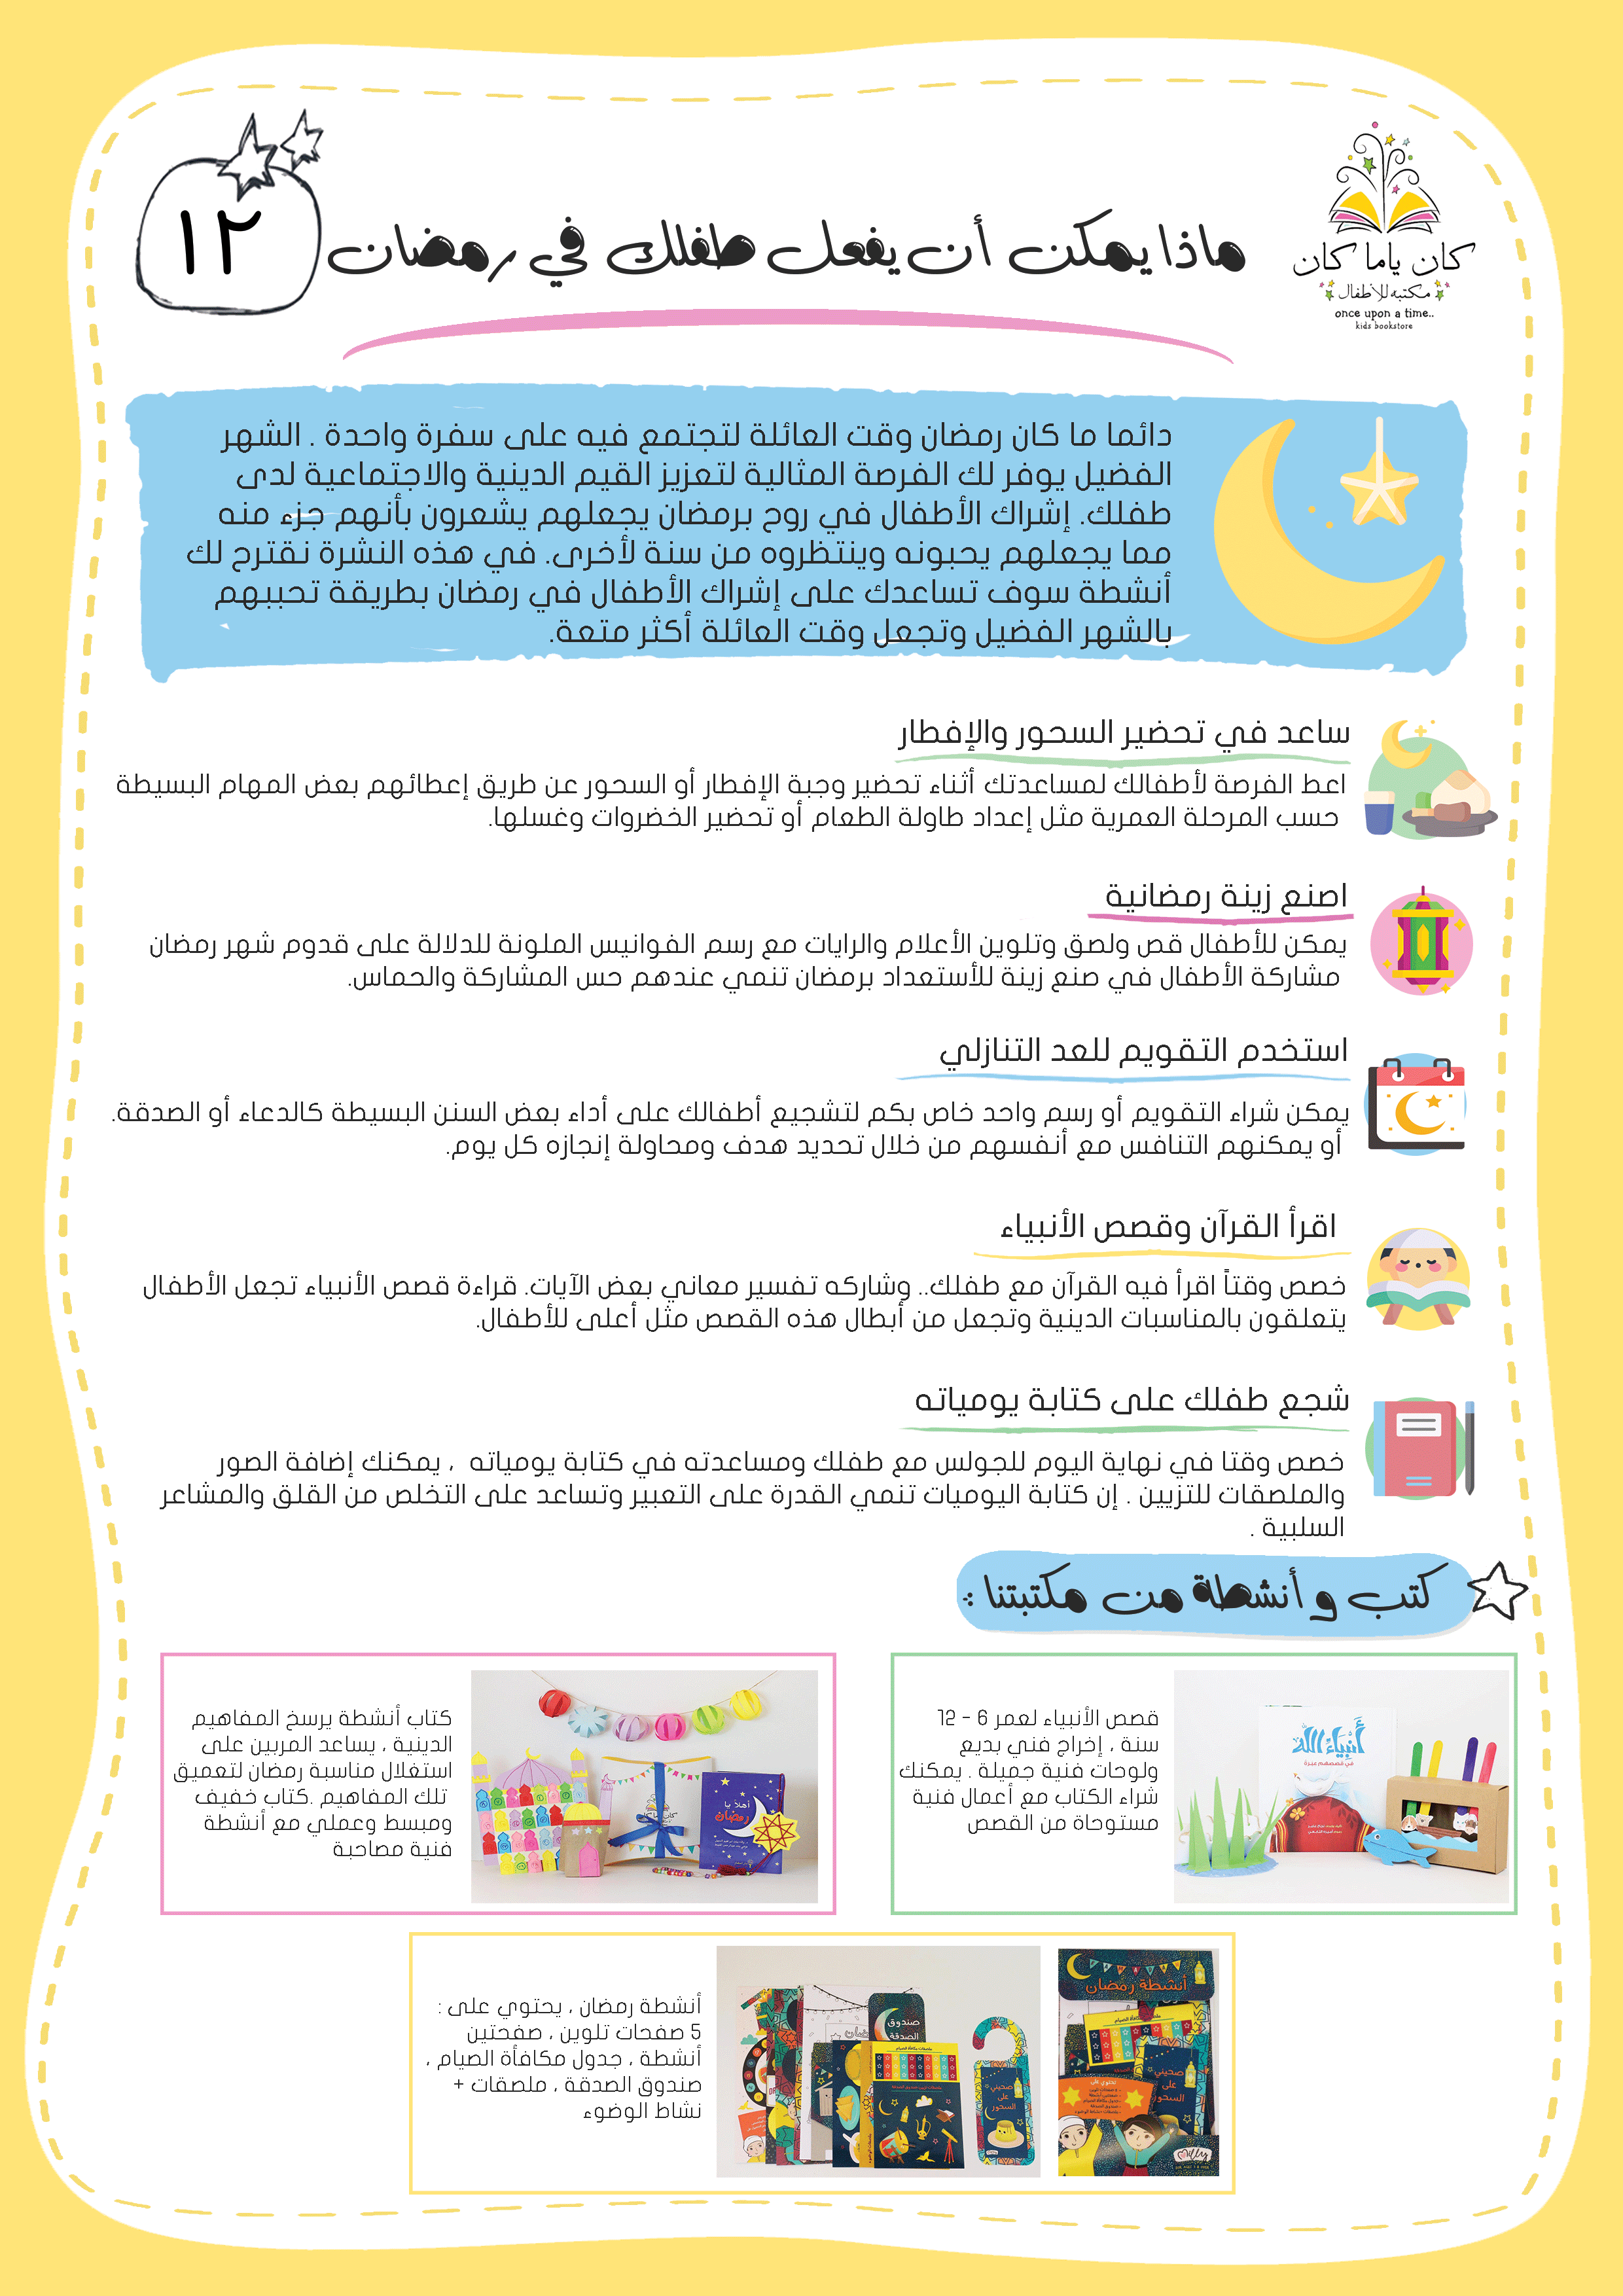 ماذا يمكن أن يفعل طفل في رمضان؟